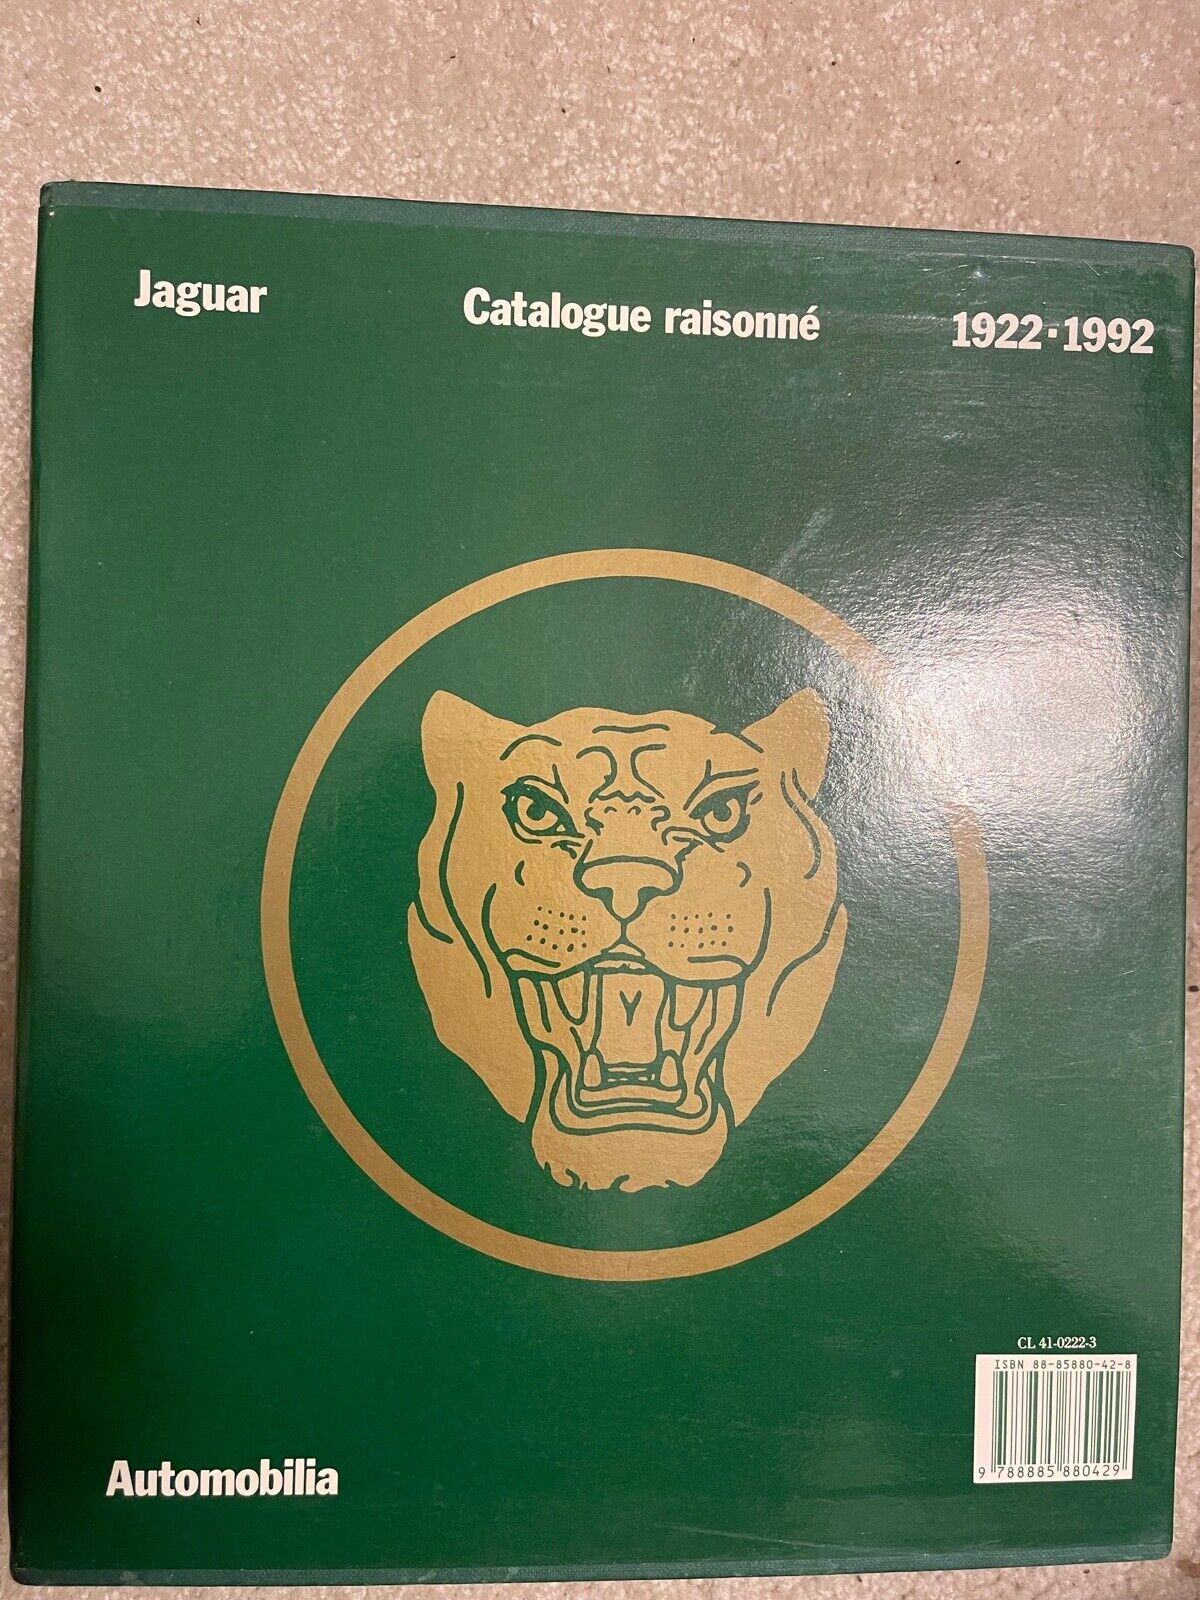 Jaguar Catalogue Raisonne 1922-1992 - Boxed set of two volumes